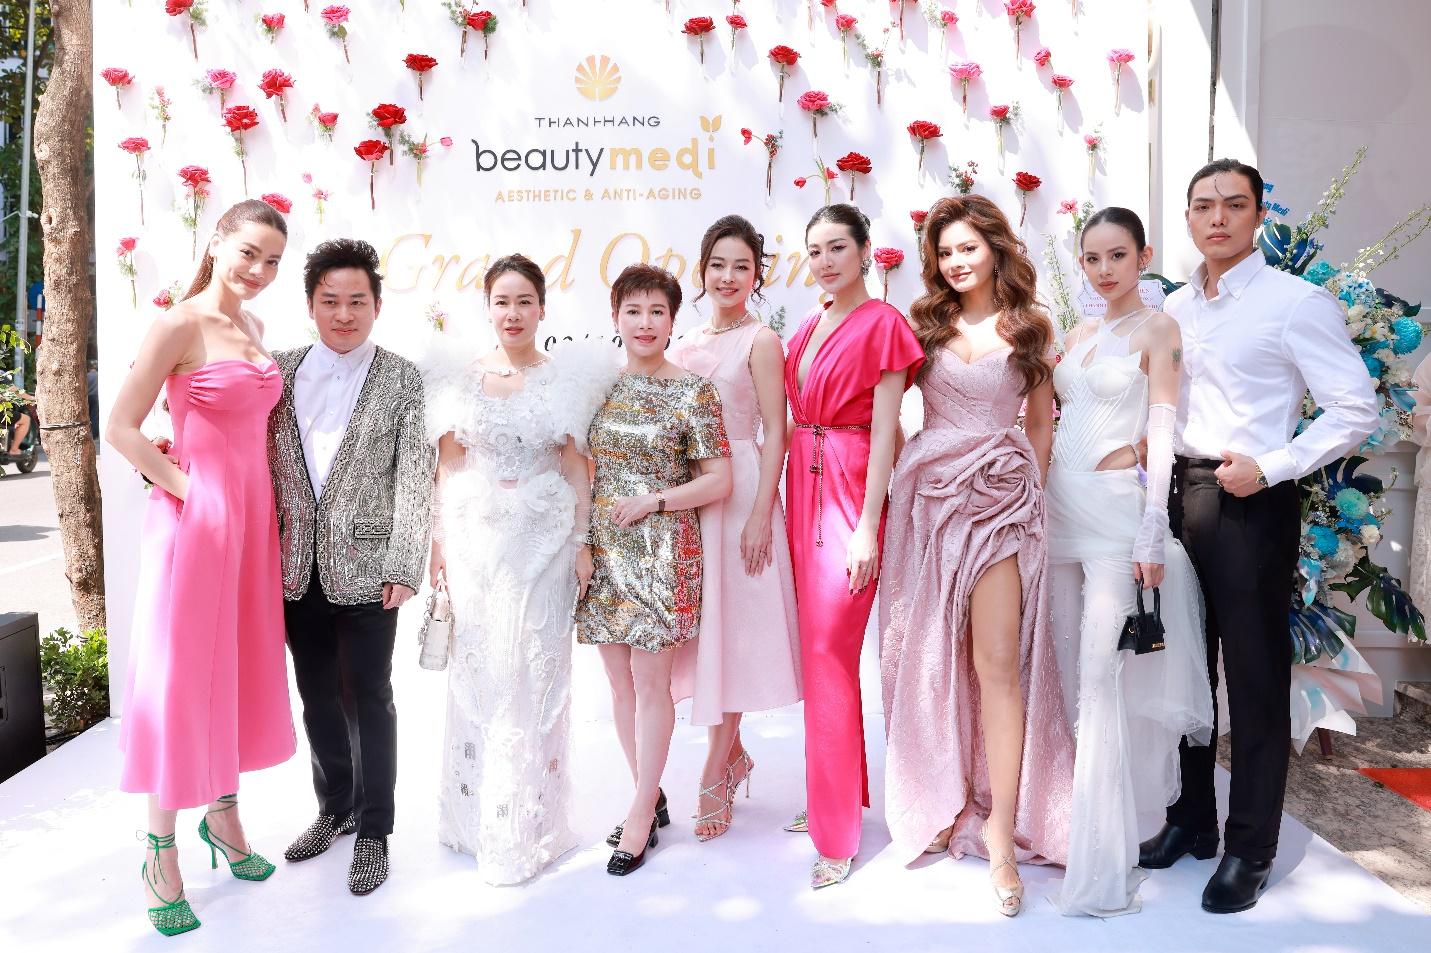 Dàn sao Việt bất ngờ với trụ sở mới sang trọng và đẳng cấp của Thanh Hằng Beauty Medi - Ảnh 6.